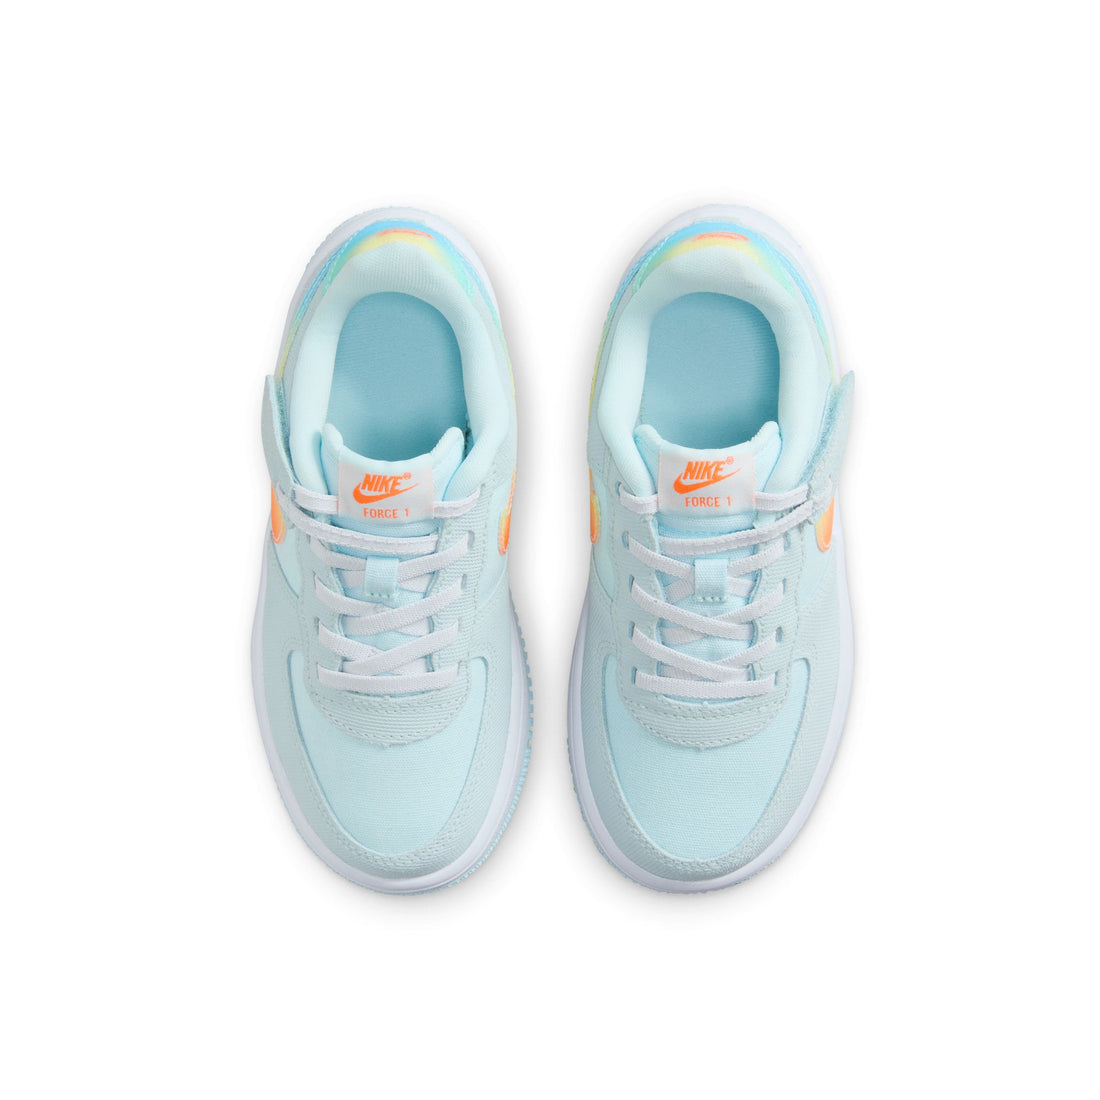 Nike Force 1 Low Easyon BP (Glacier Blue/Total Orange)